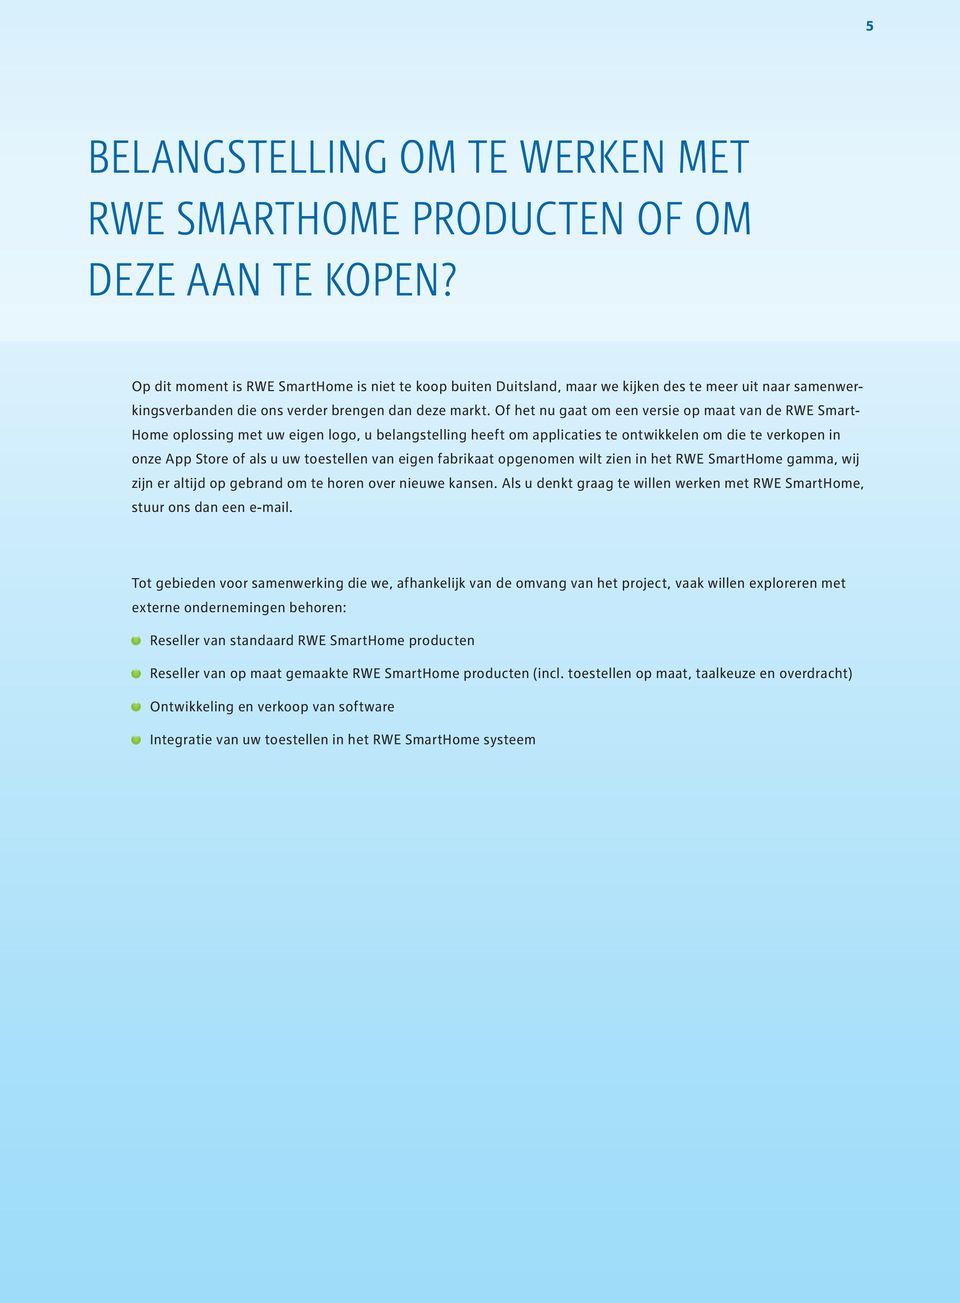 Of het nu gaat om een versie op maat van de RWE Smart- Home oplossing met uw eigen logo, u belangstelling heeft om applicaties te ontwikkelen om die te verkopen in onze App Store of als u uw